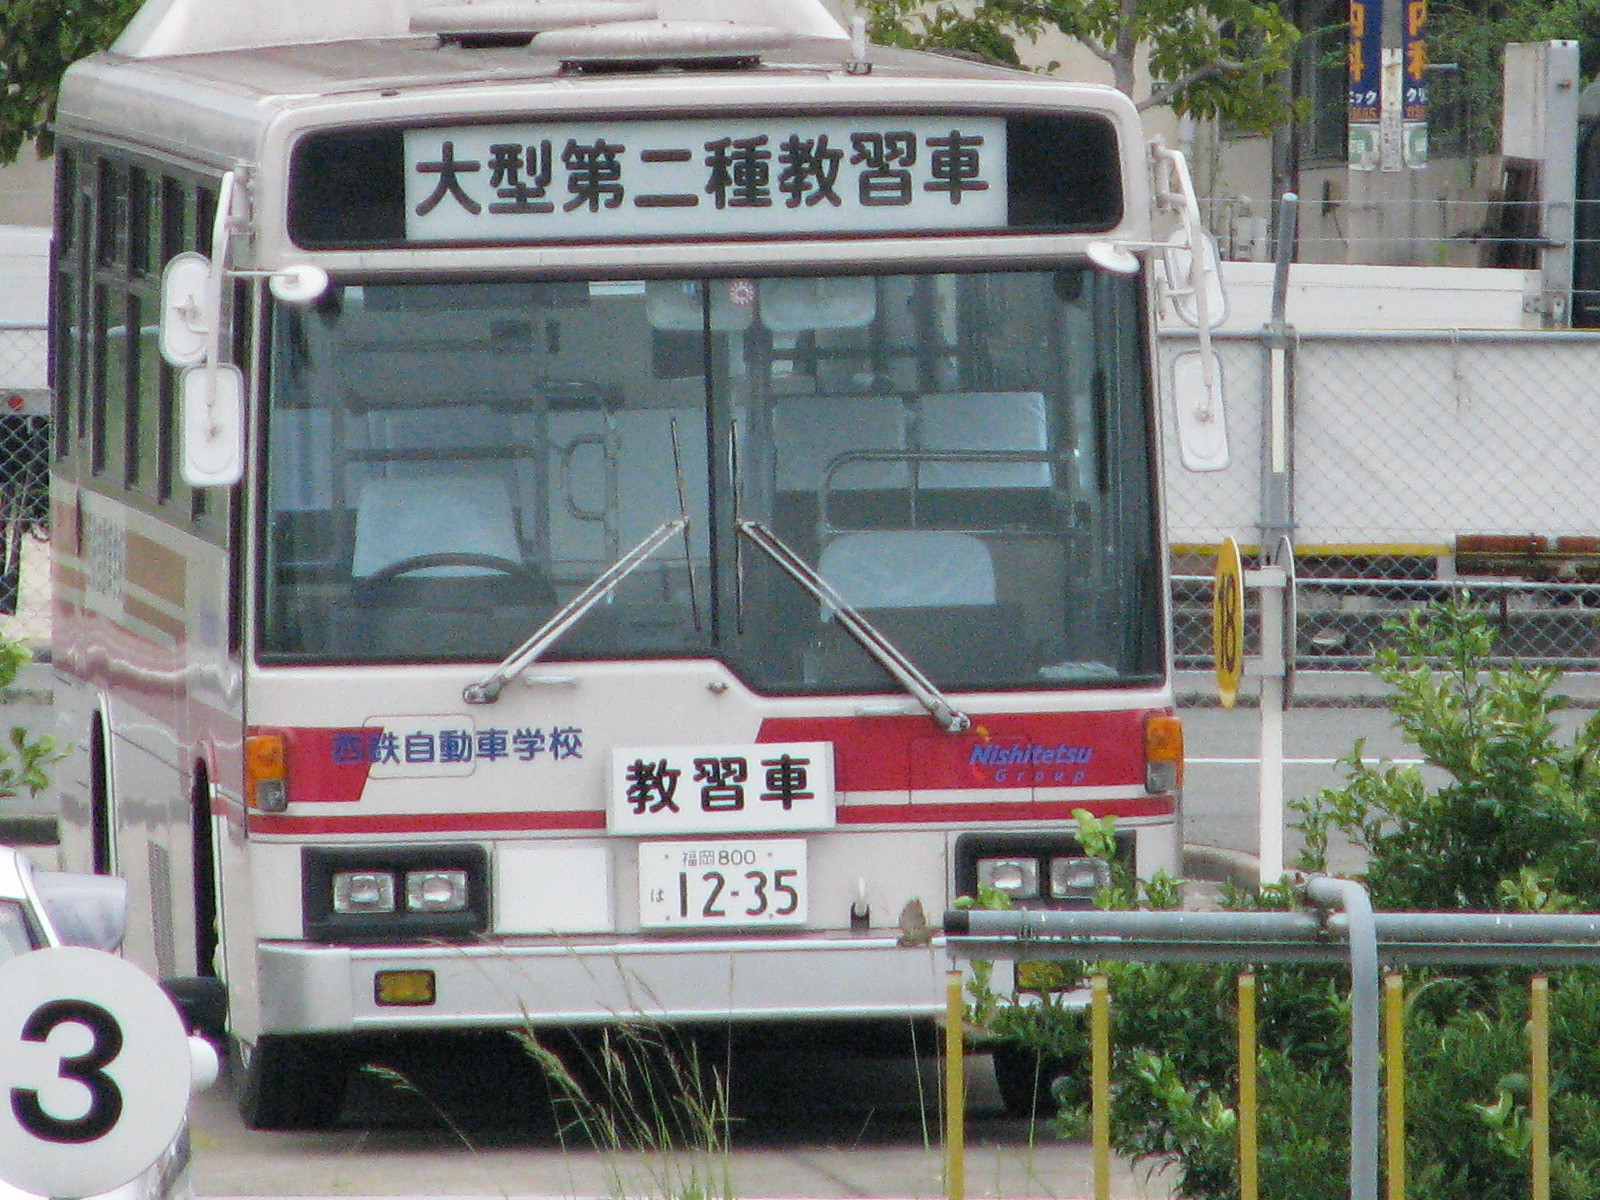 福岡800は12-35